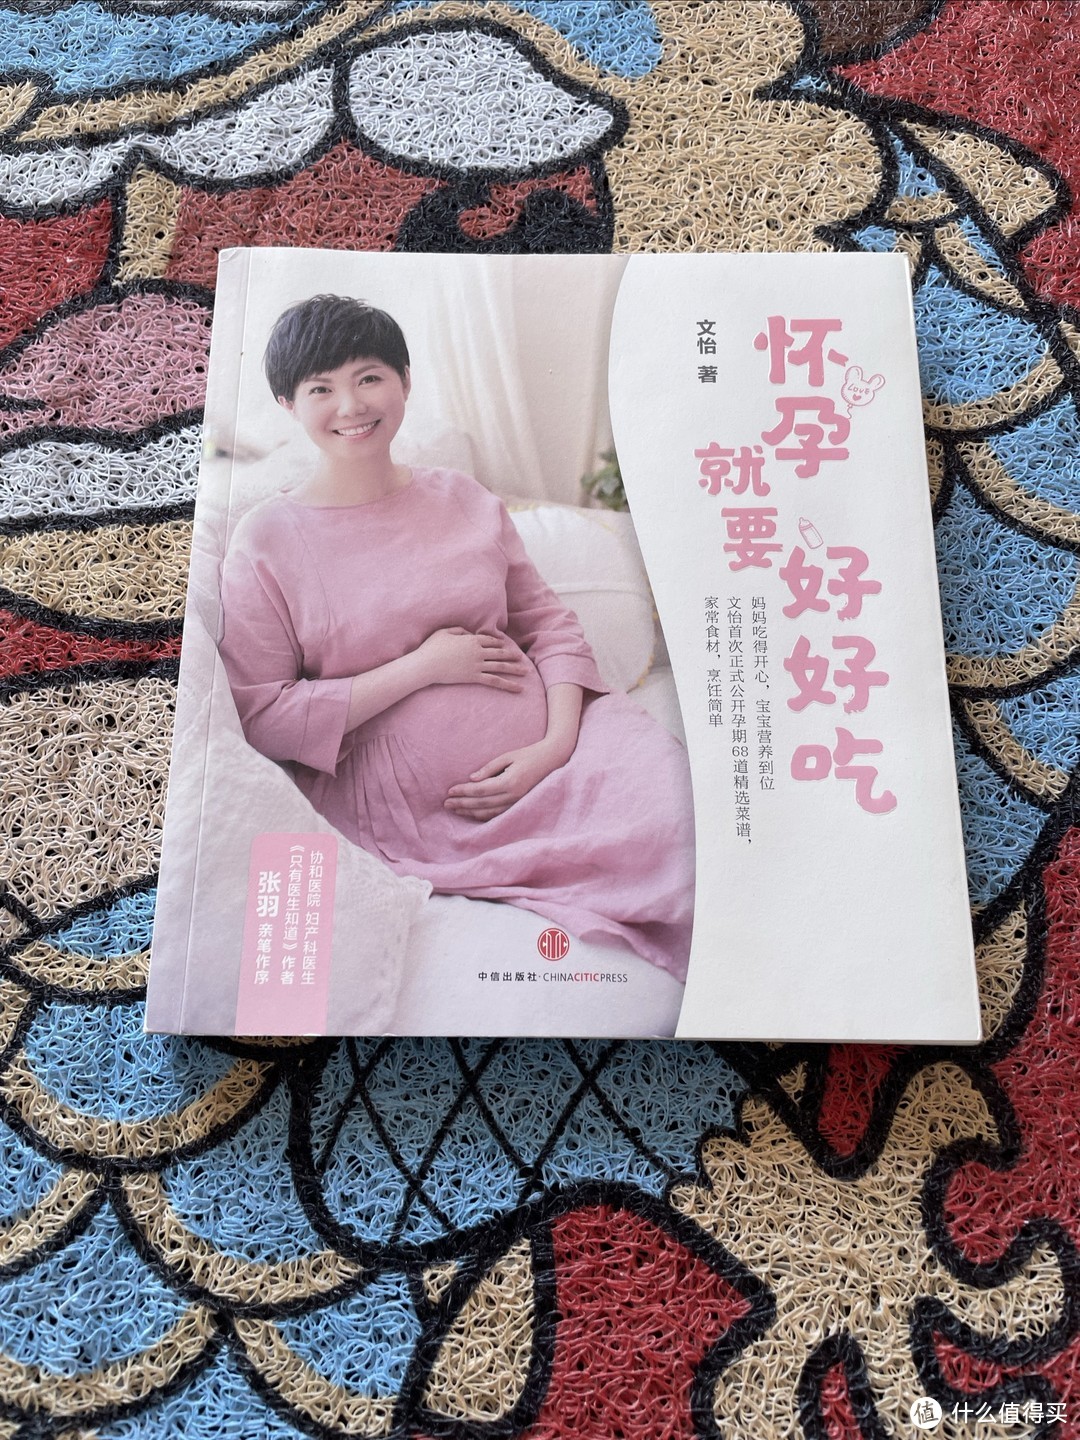 怀孕就要好好吃，这本书籍非常适合准爸爸准妈妈阅读。